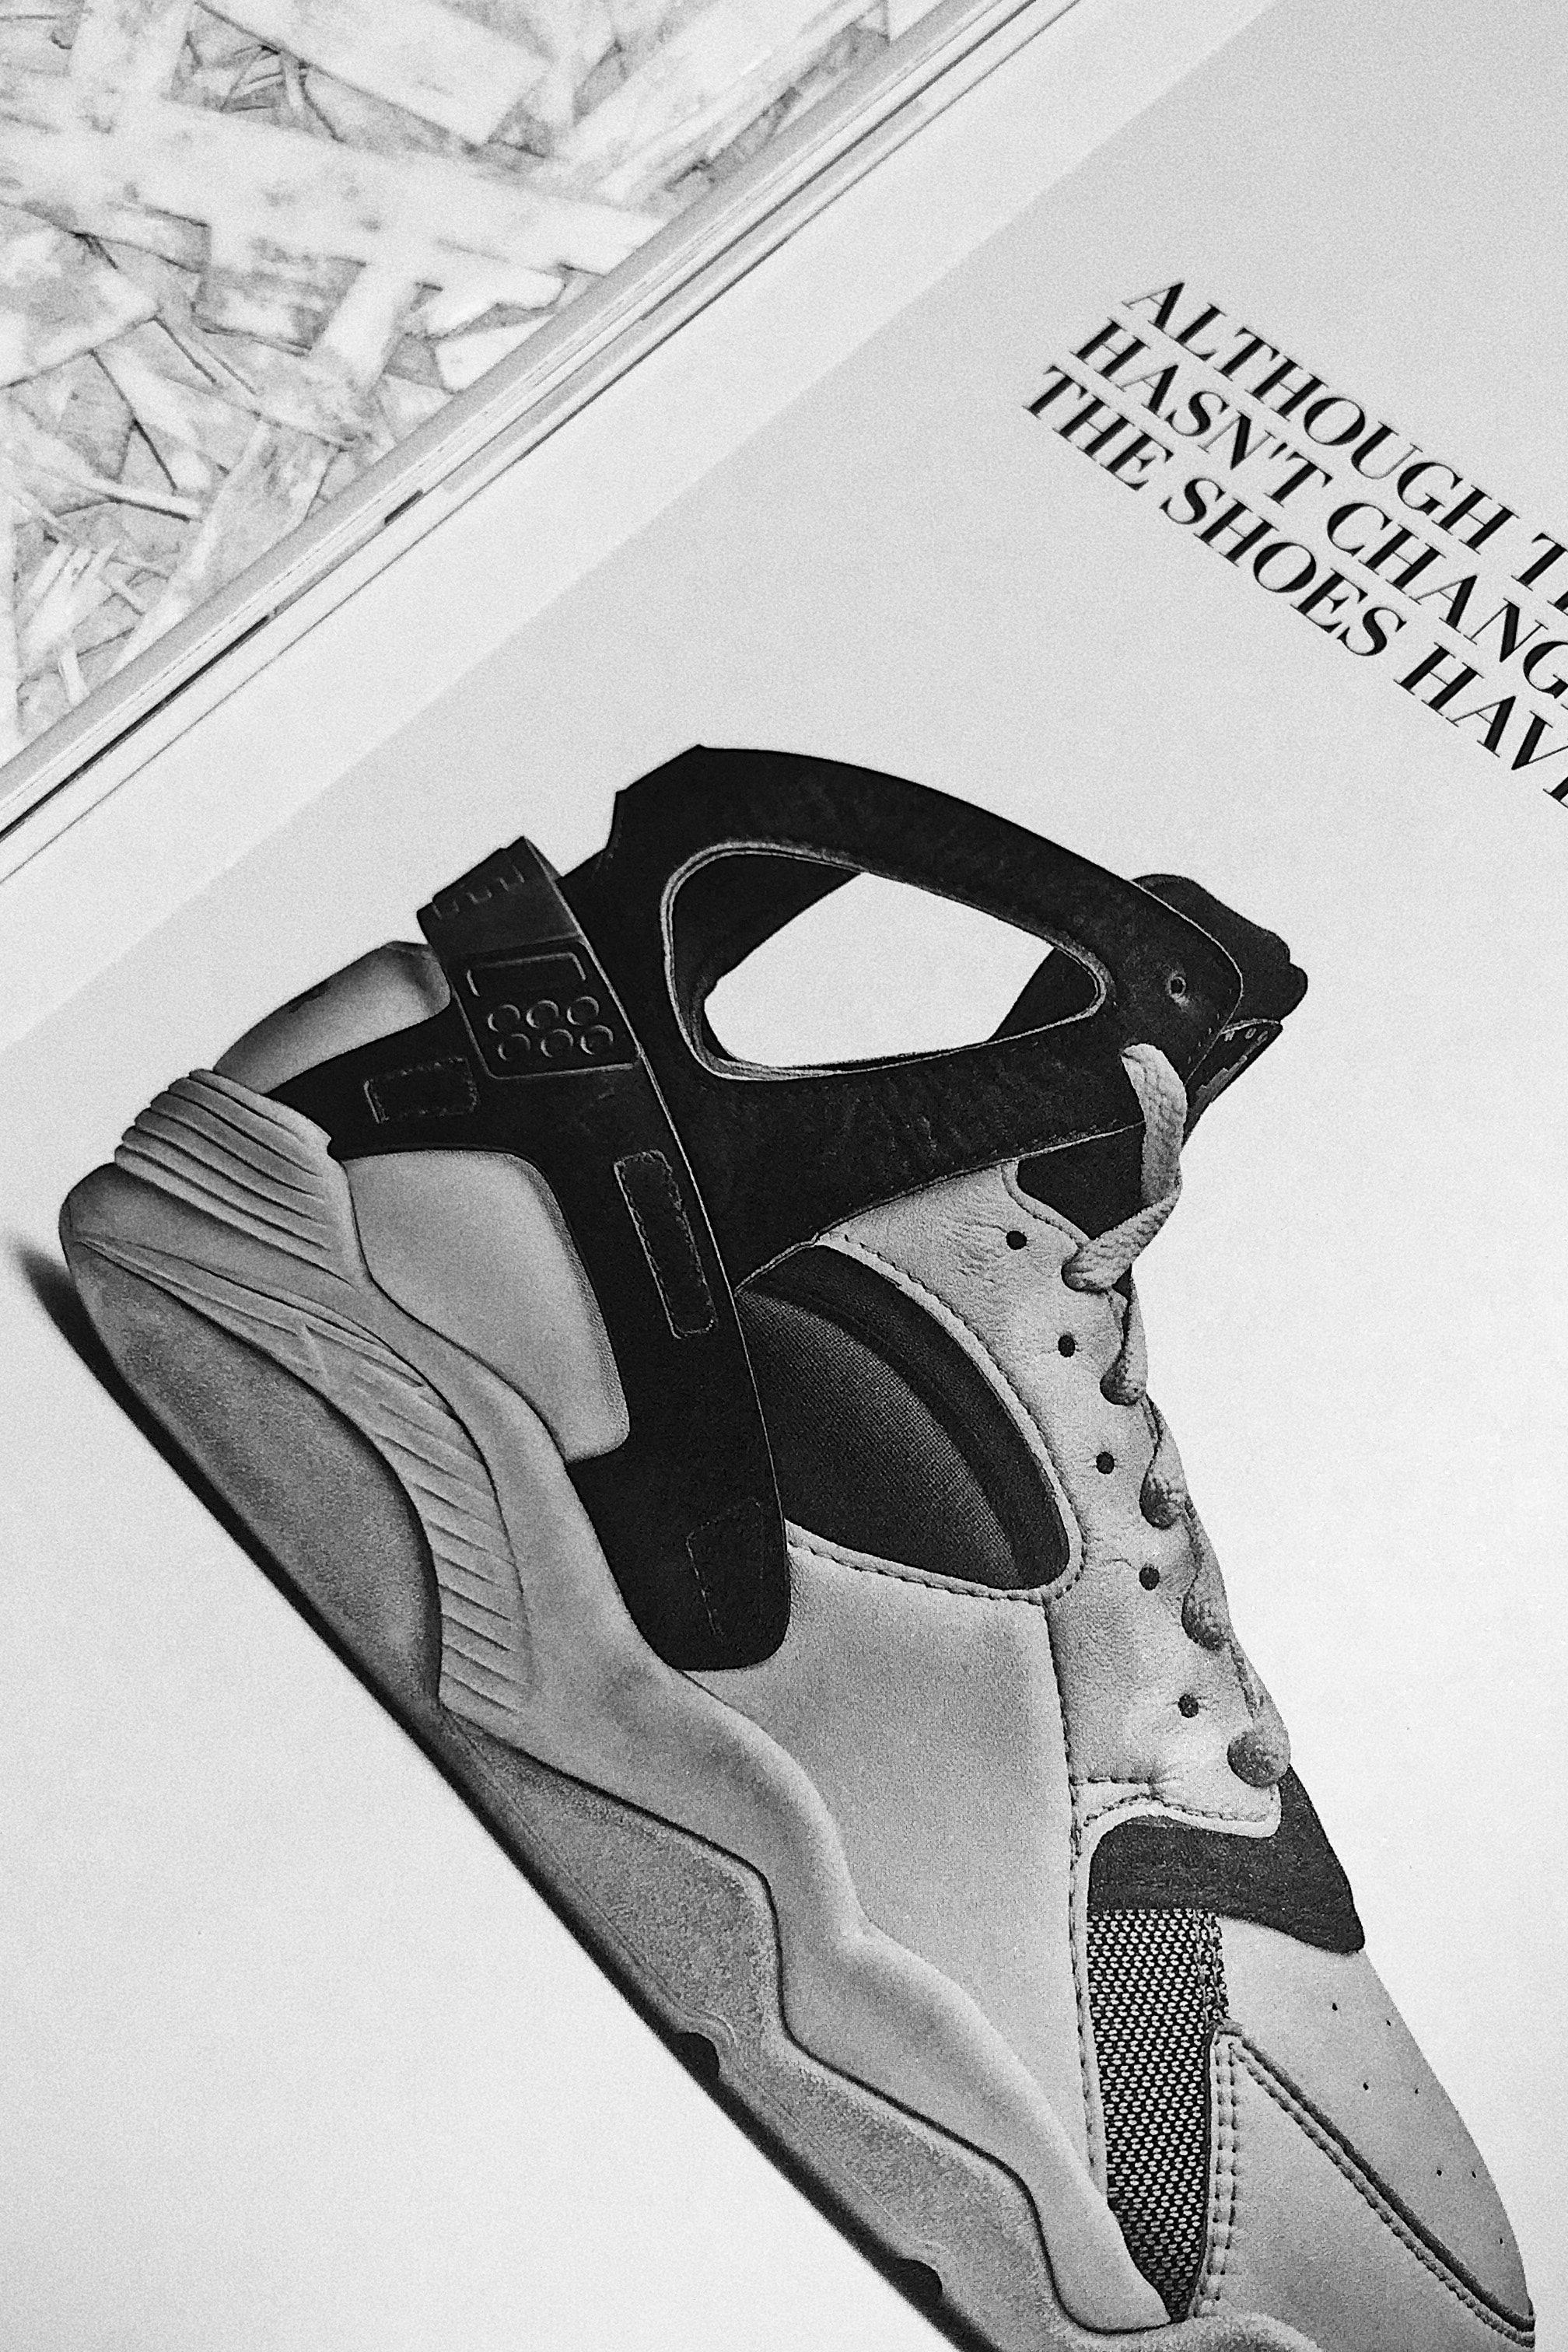 球鞋杂志《Digger》推出「Kobe Issue」纪念特辑